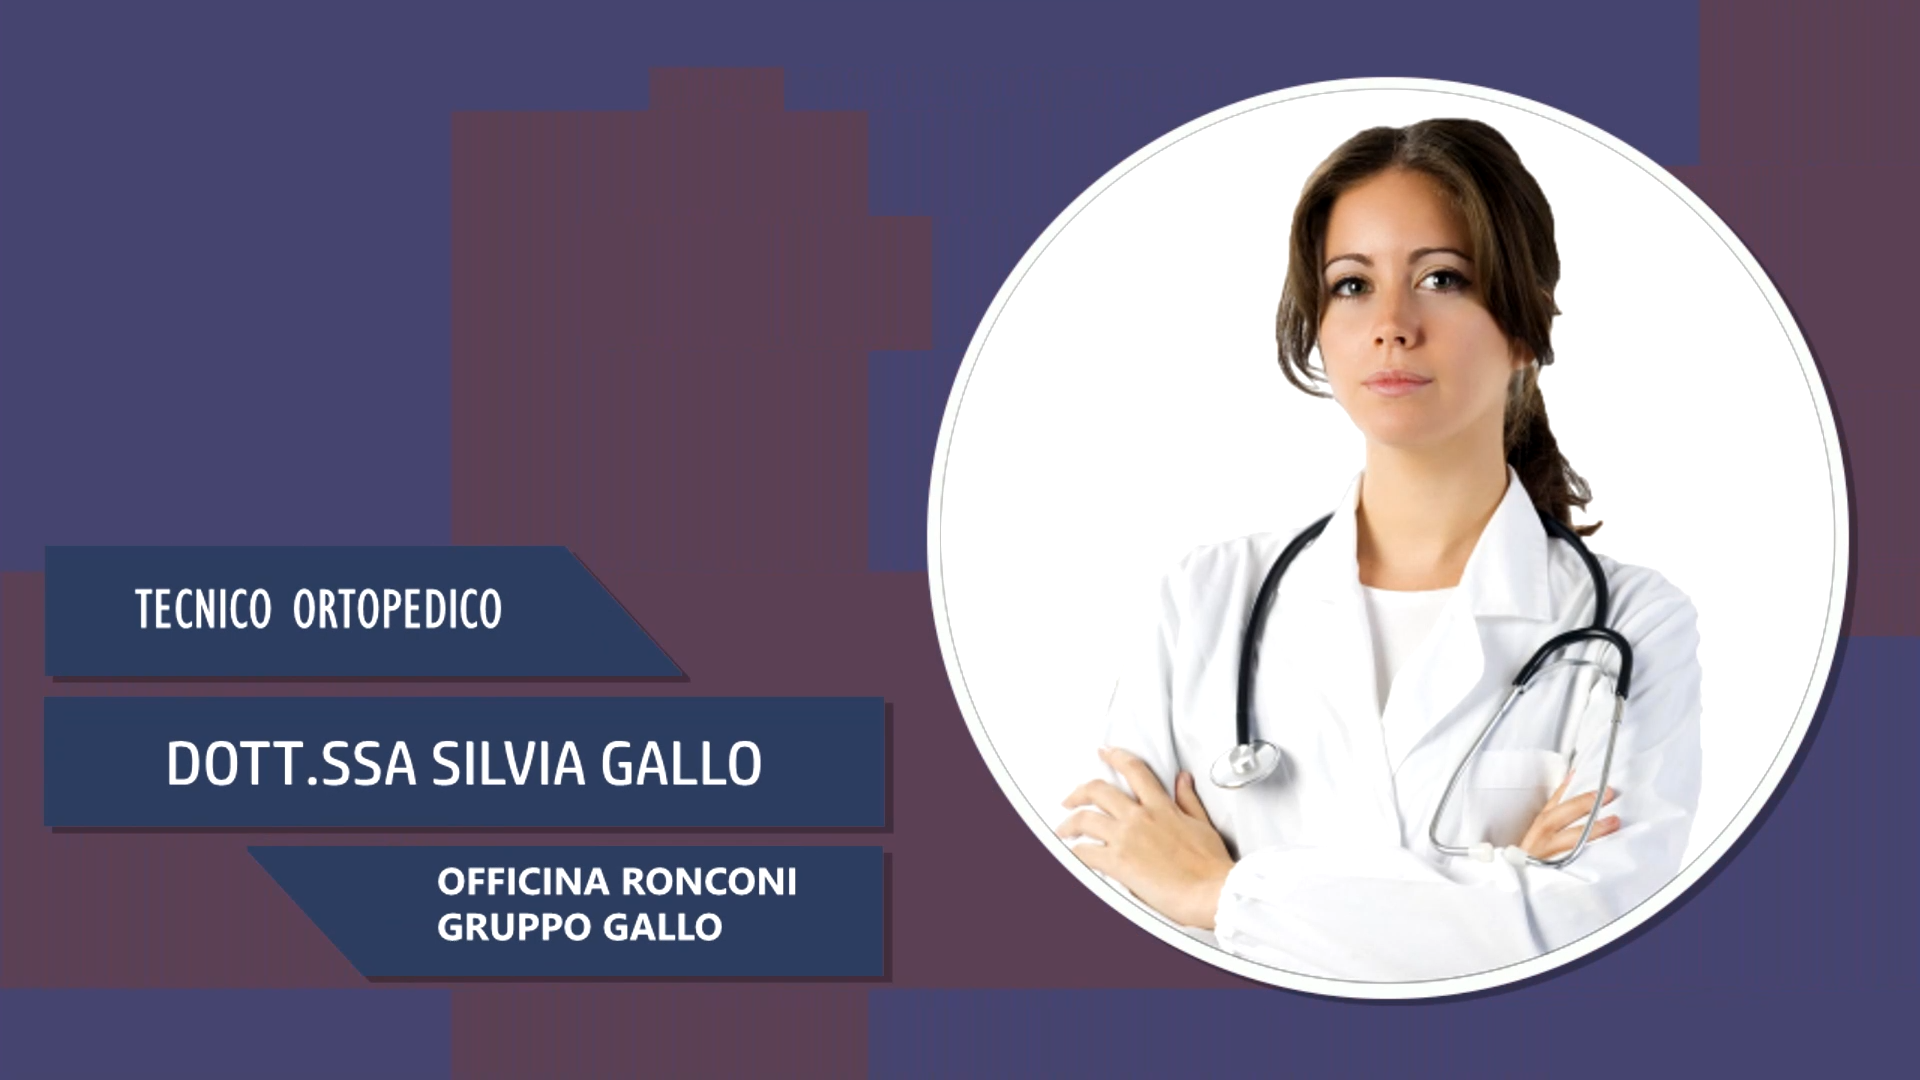 Intervista alla Dott.ssa Silvia Gallo – Officina Ronconi gruppo Gallo